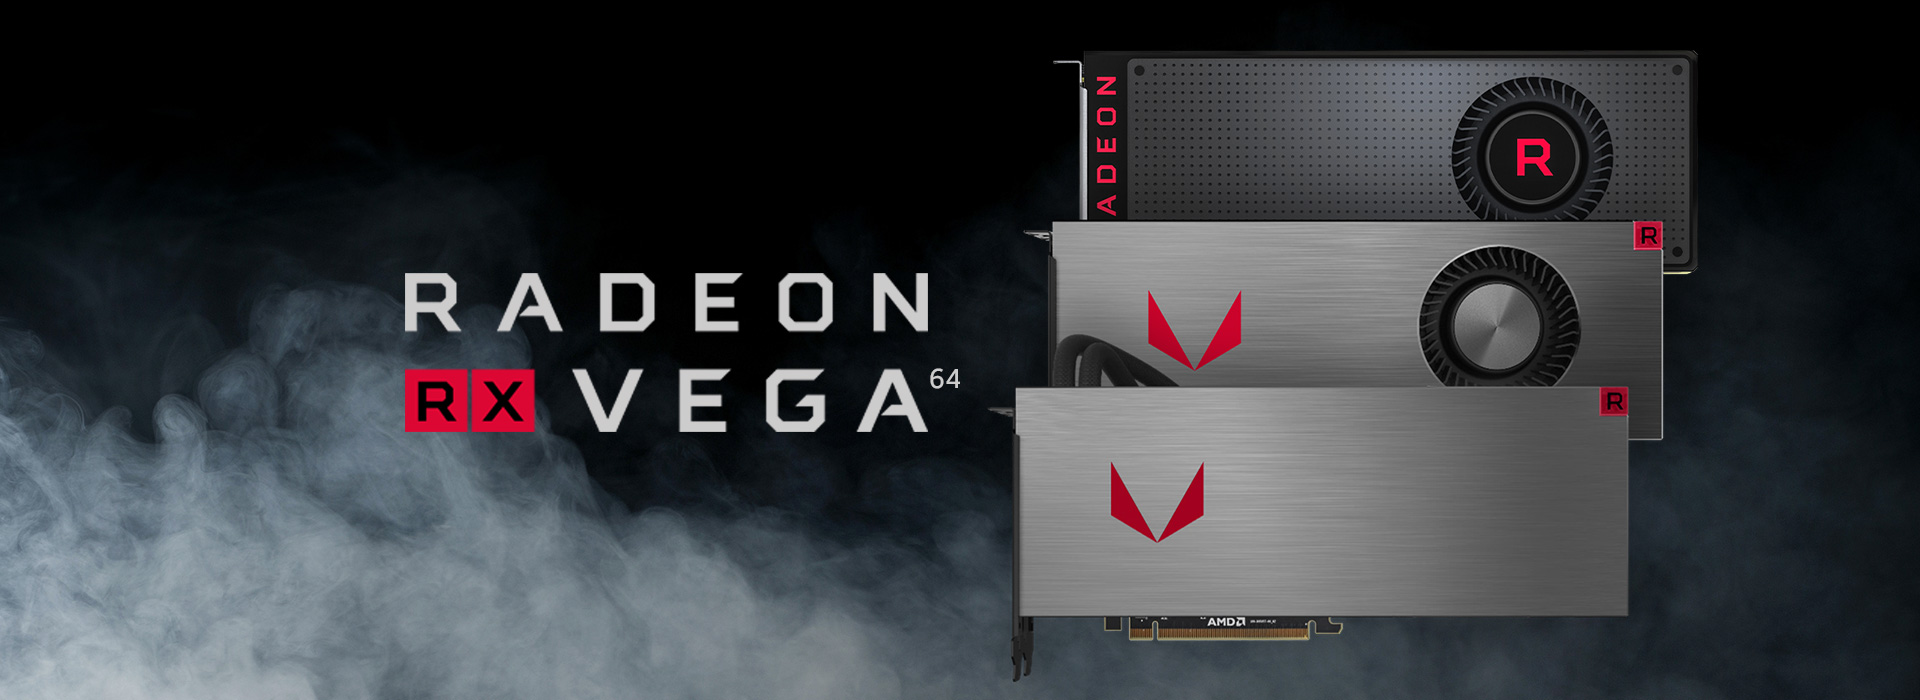 Immagine pubblicata in relazione al seguente contenuto: La posizione ufficiale di AMD sui prezzi delle video card Radeon RX Vega 64 | Nome immagine: news26877_AMD-Radeon-RX-Vega-64_1.jpg